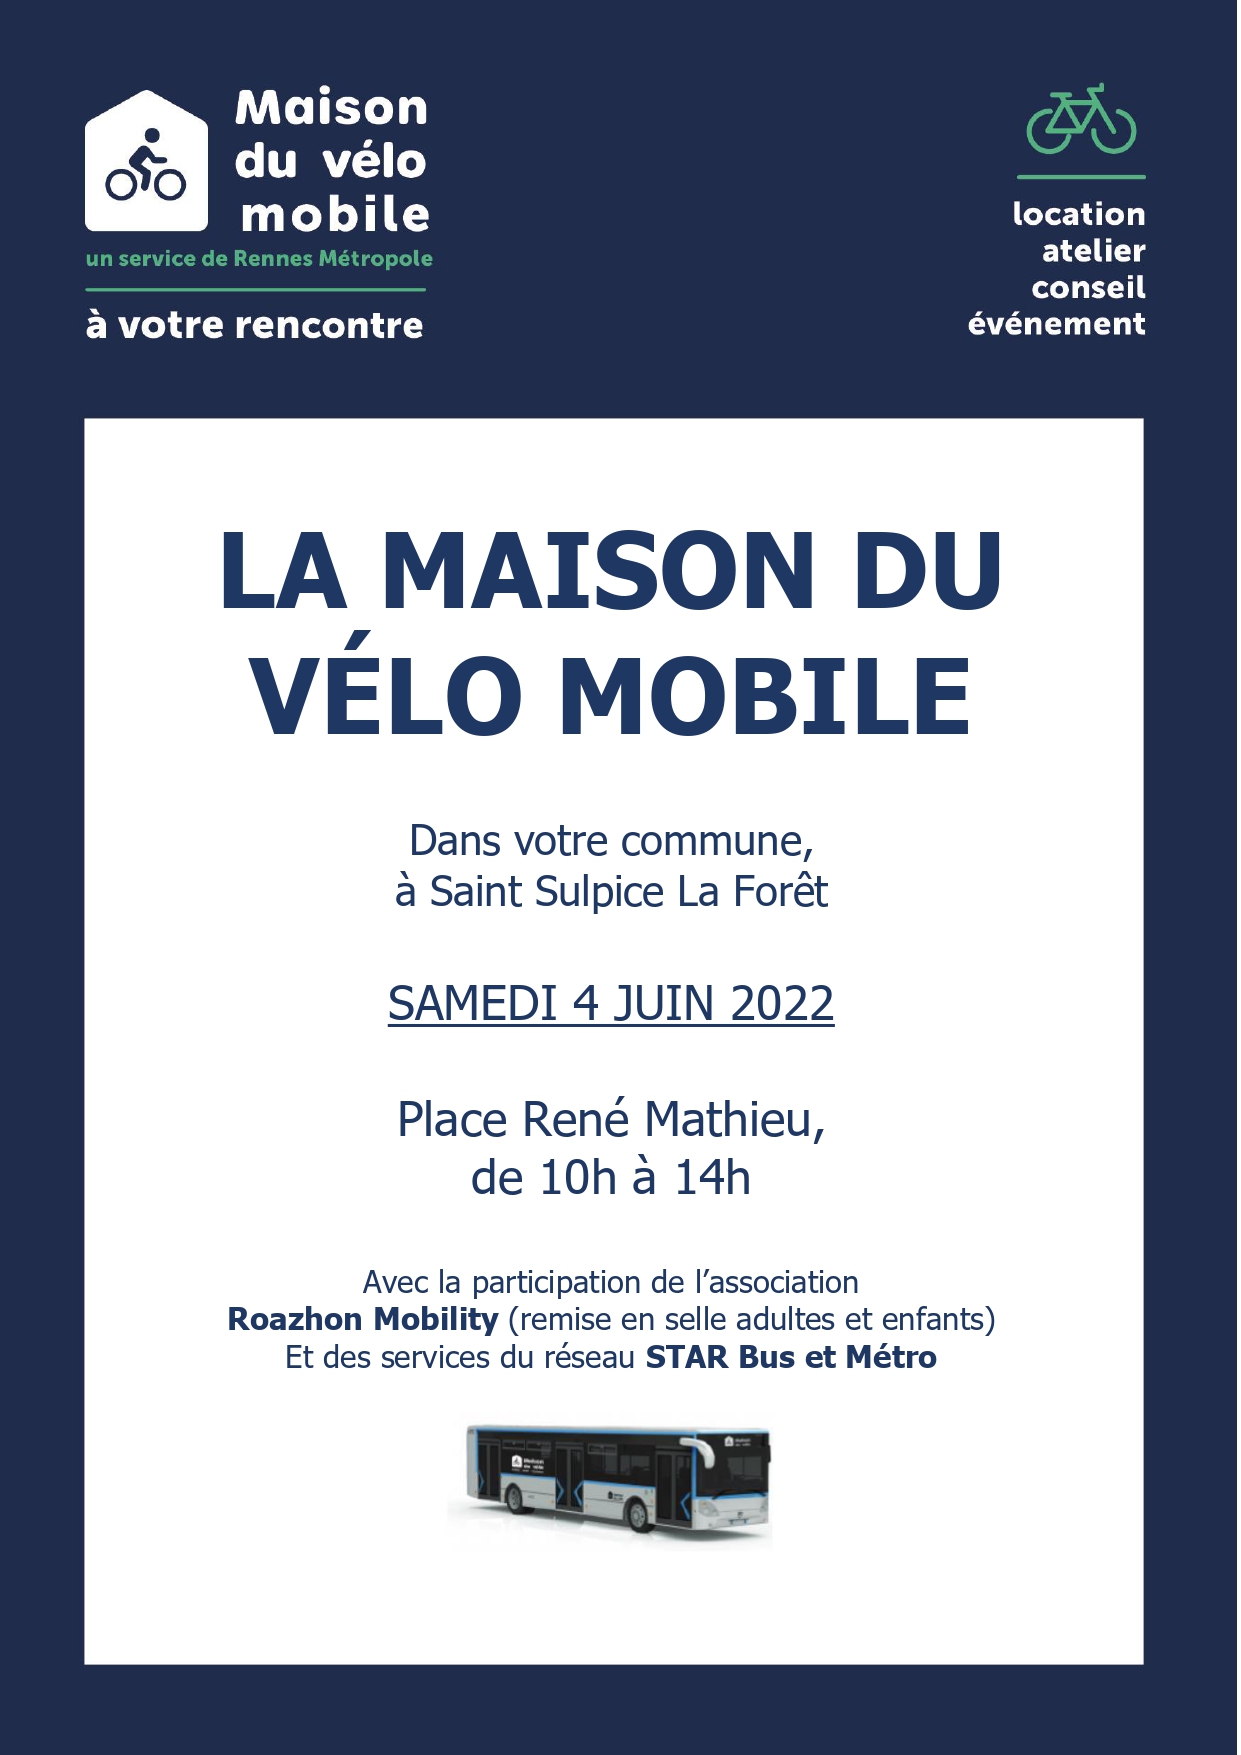 La Maison du Vélo Mobile le 4 juin 2022.